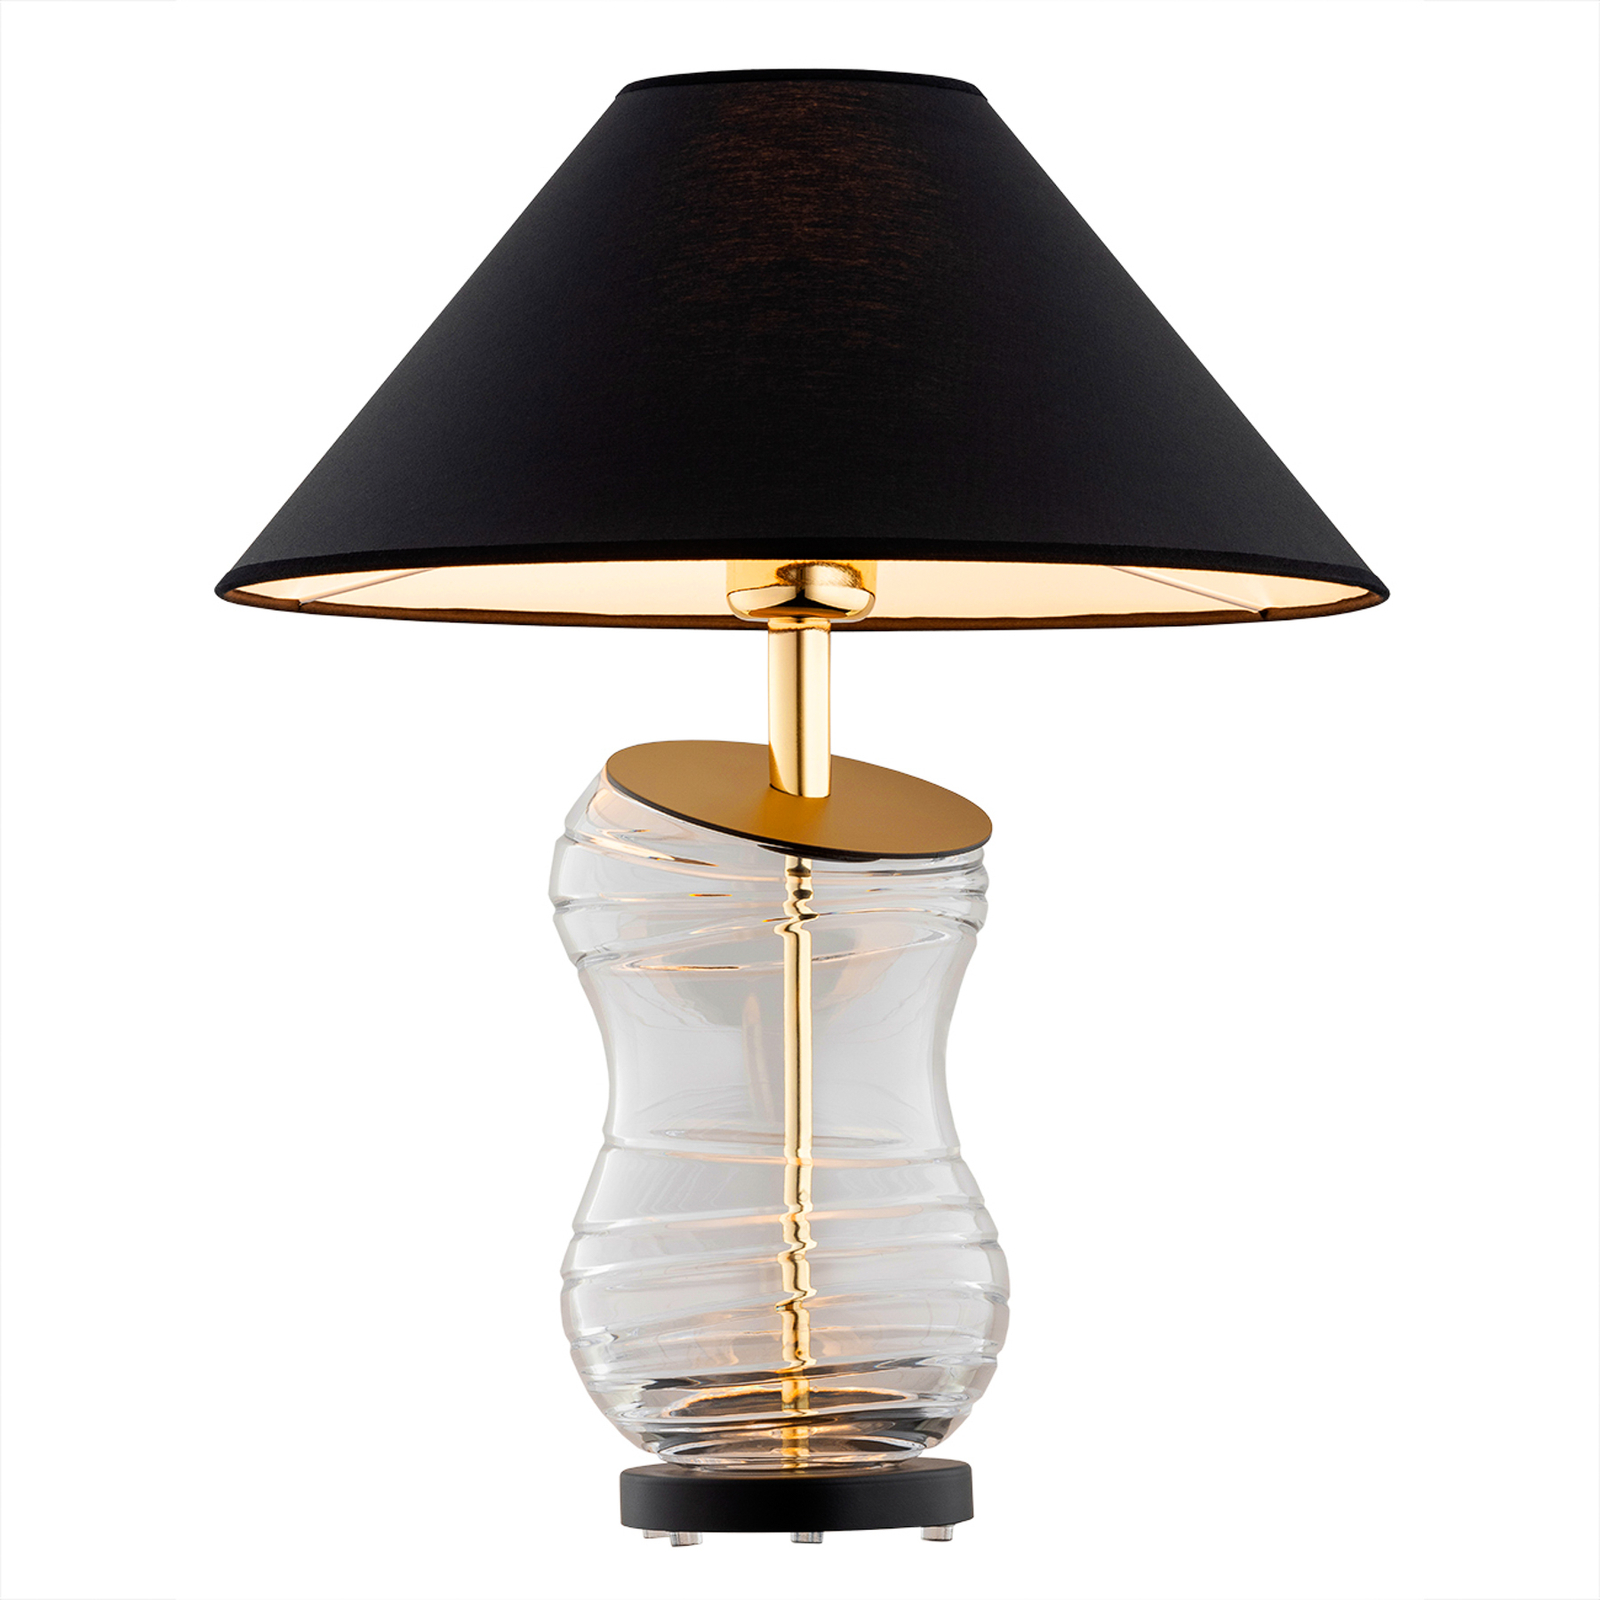 Veneto stolna lampa s tekstilnim sjenilom u crnoj boji